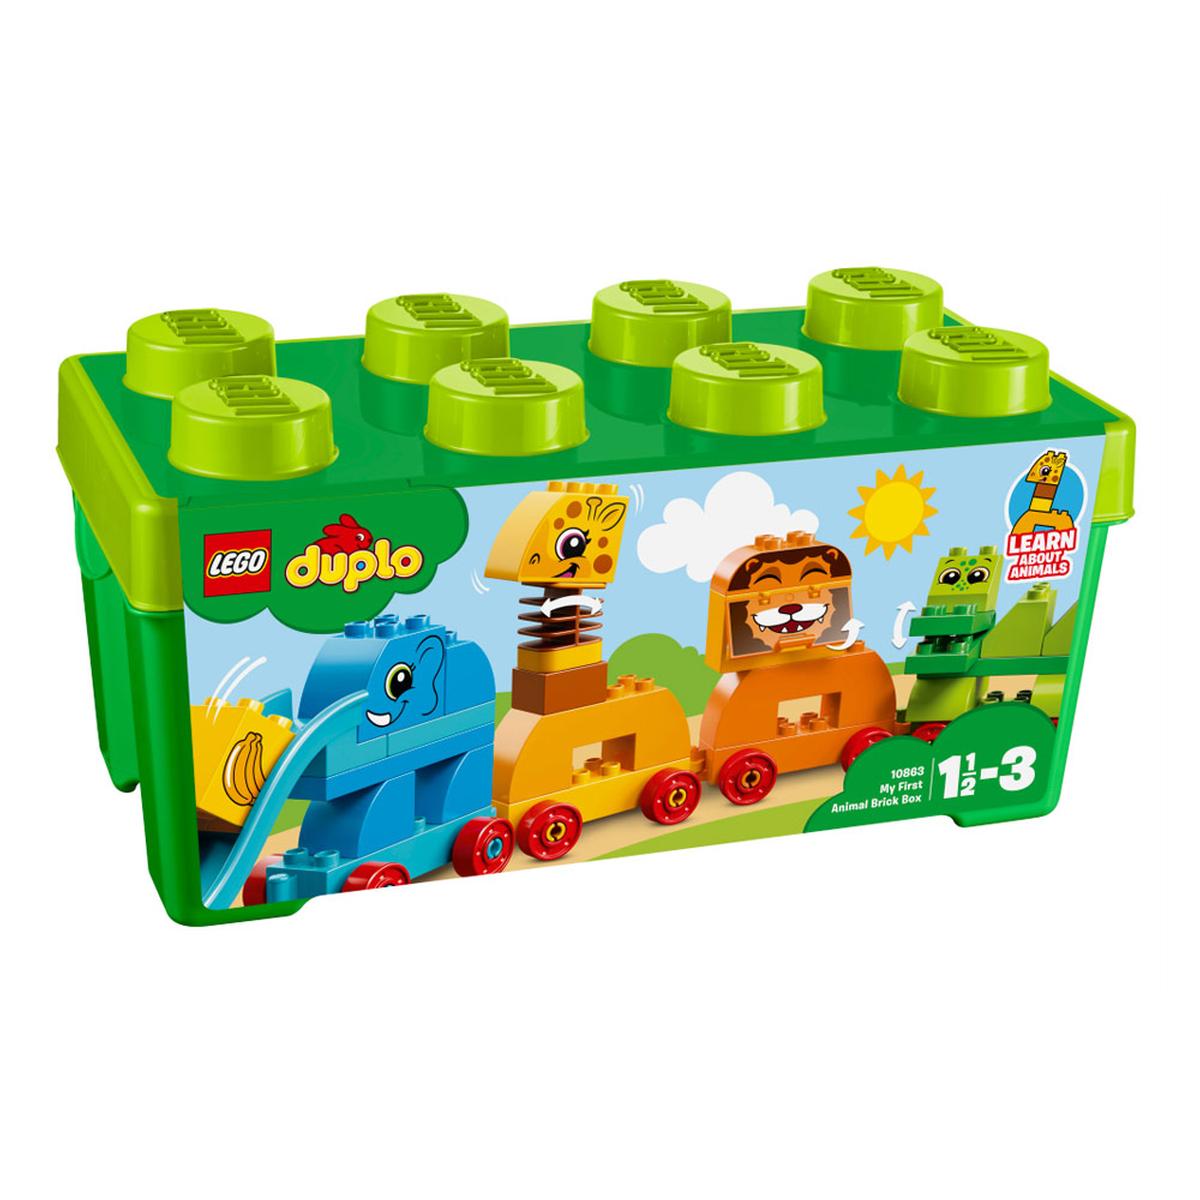 LEGO DUPLO - A Minha Primeira Caixa com Peças de Animais - 10863 | Duplo  tijolos e placas | Loja de brinquedos e videojogos Online Toysrus